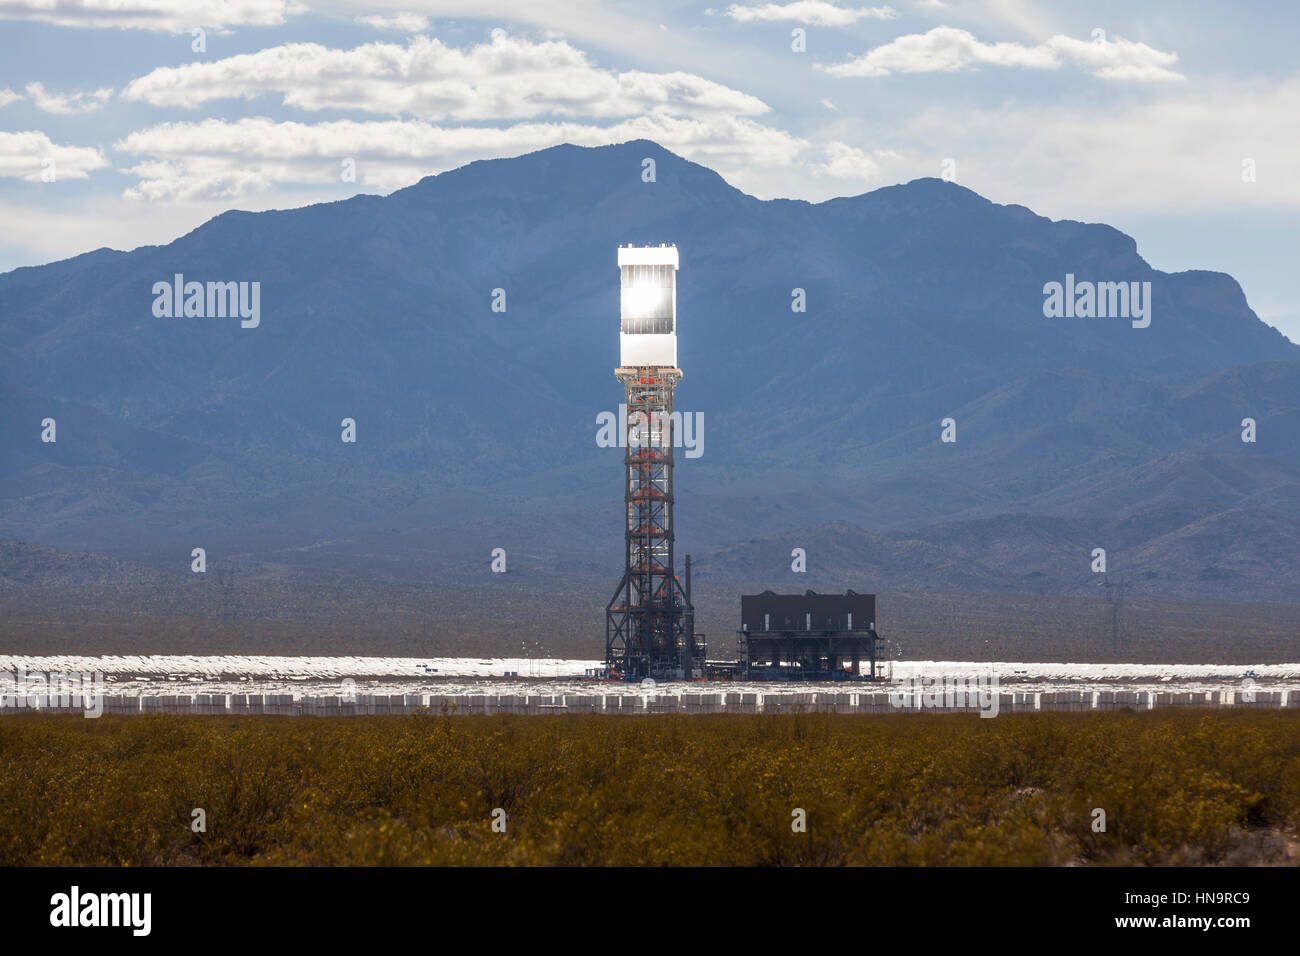 Foto editoriale del massiccio operativa di recente 392 megawatt Ivanpah solar thermal power plant in California il Mojave Desert. Foto Stock